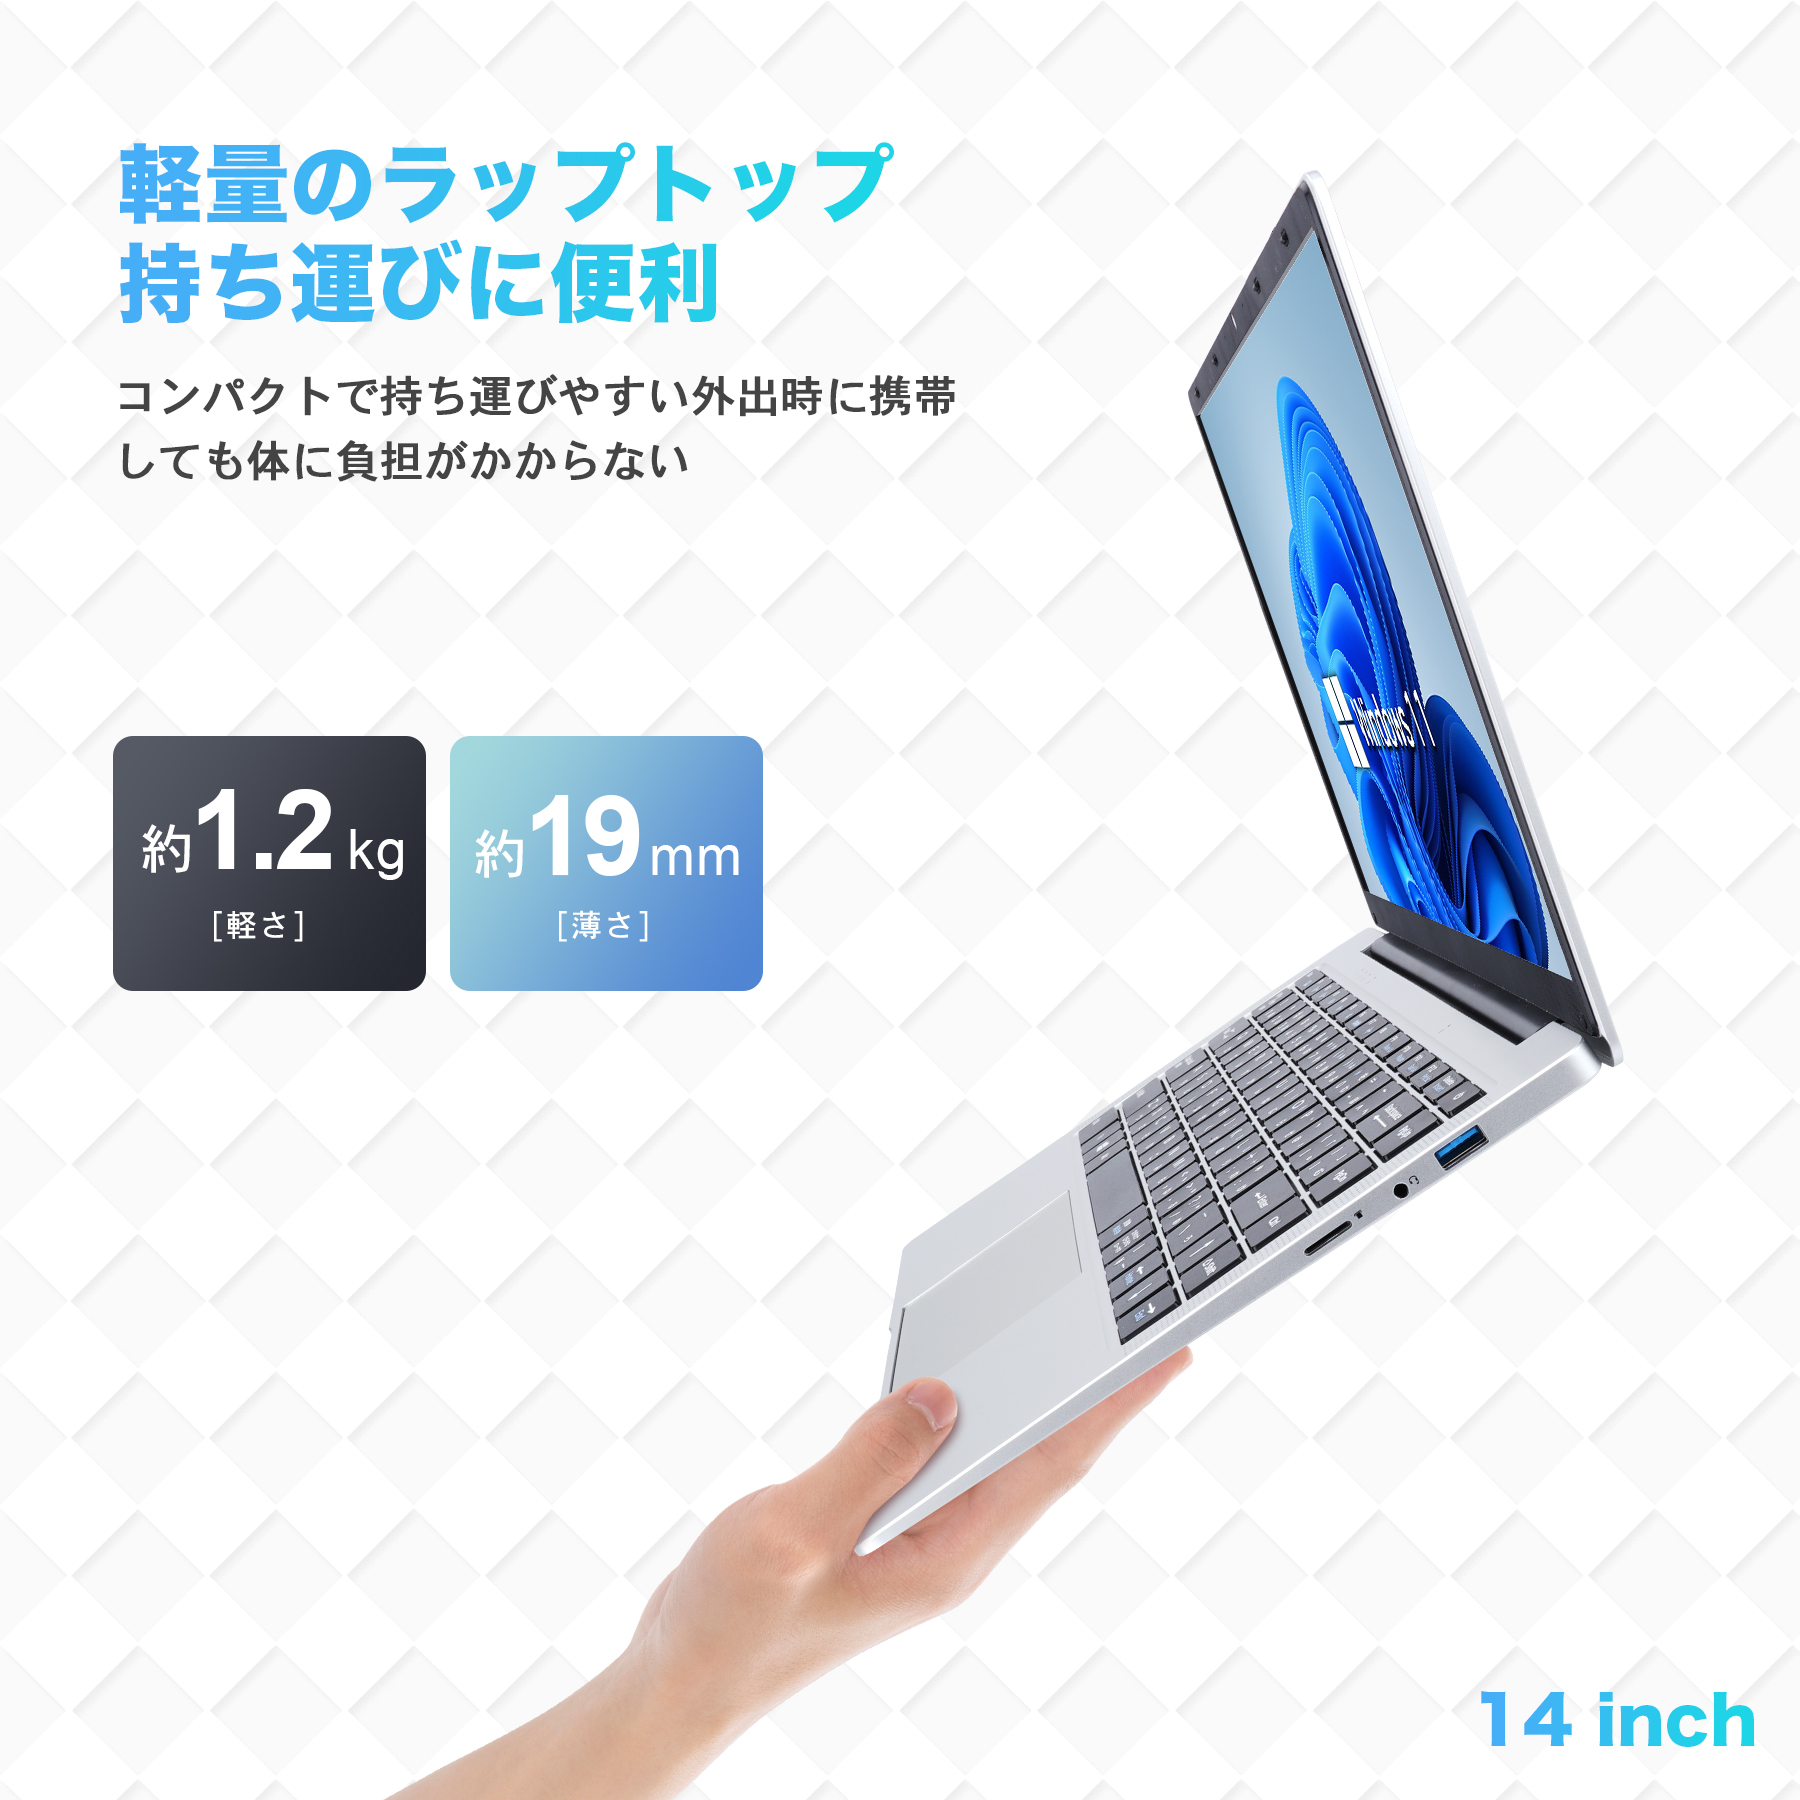 【2023年 新モデル】新品 ノートパソコン 新品 薄型ノートPC office/ Win11搭載 14インチ Celeron N3350  メモリ最大8GB SSD最大 1TB日本語キーボード ノート